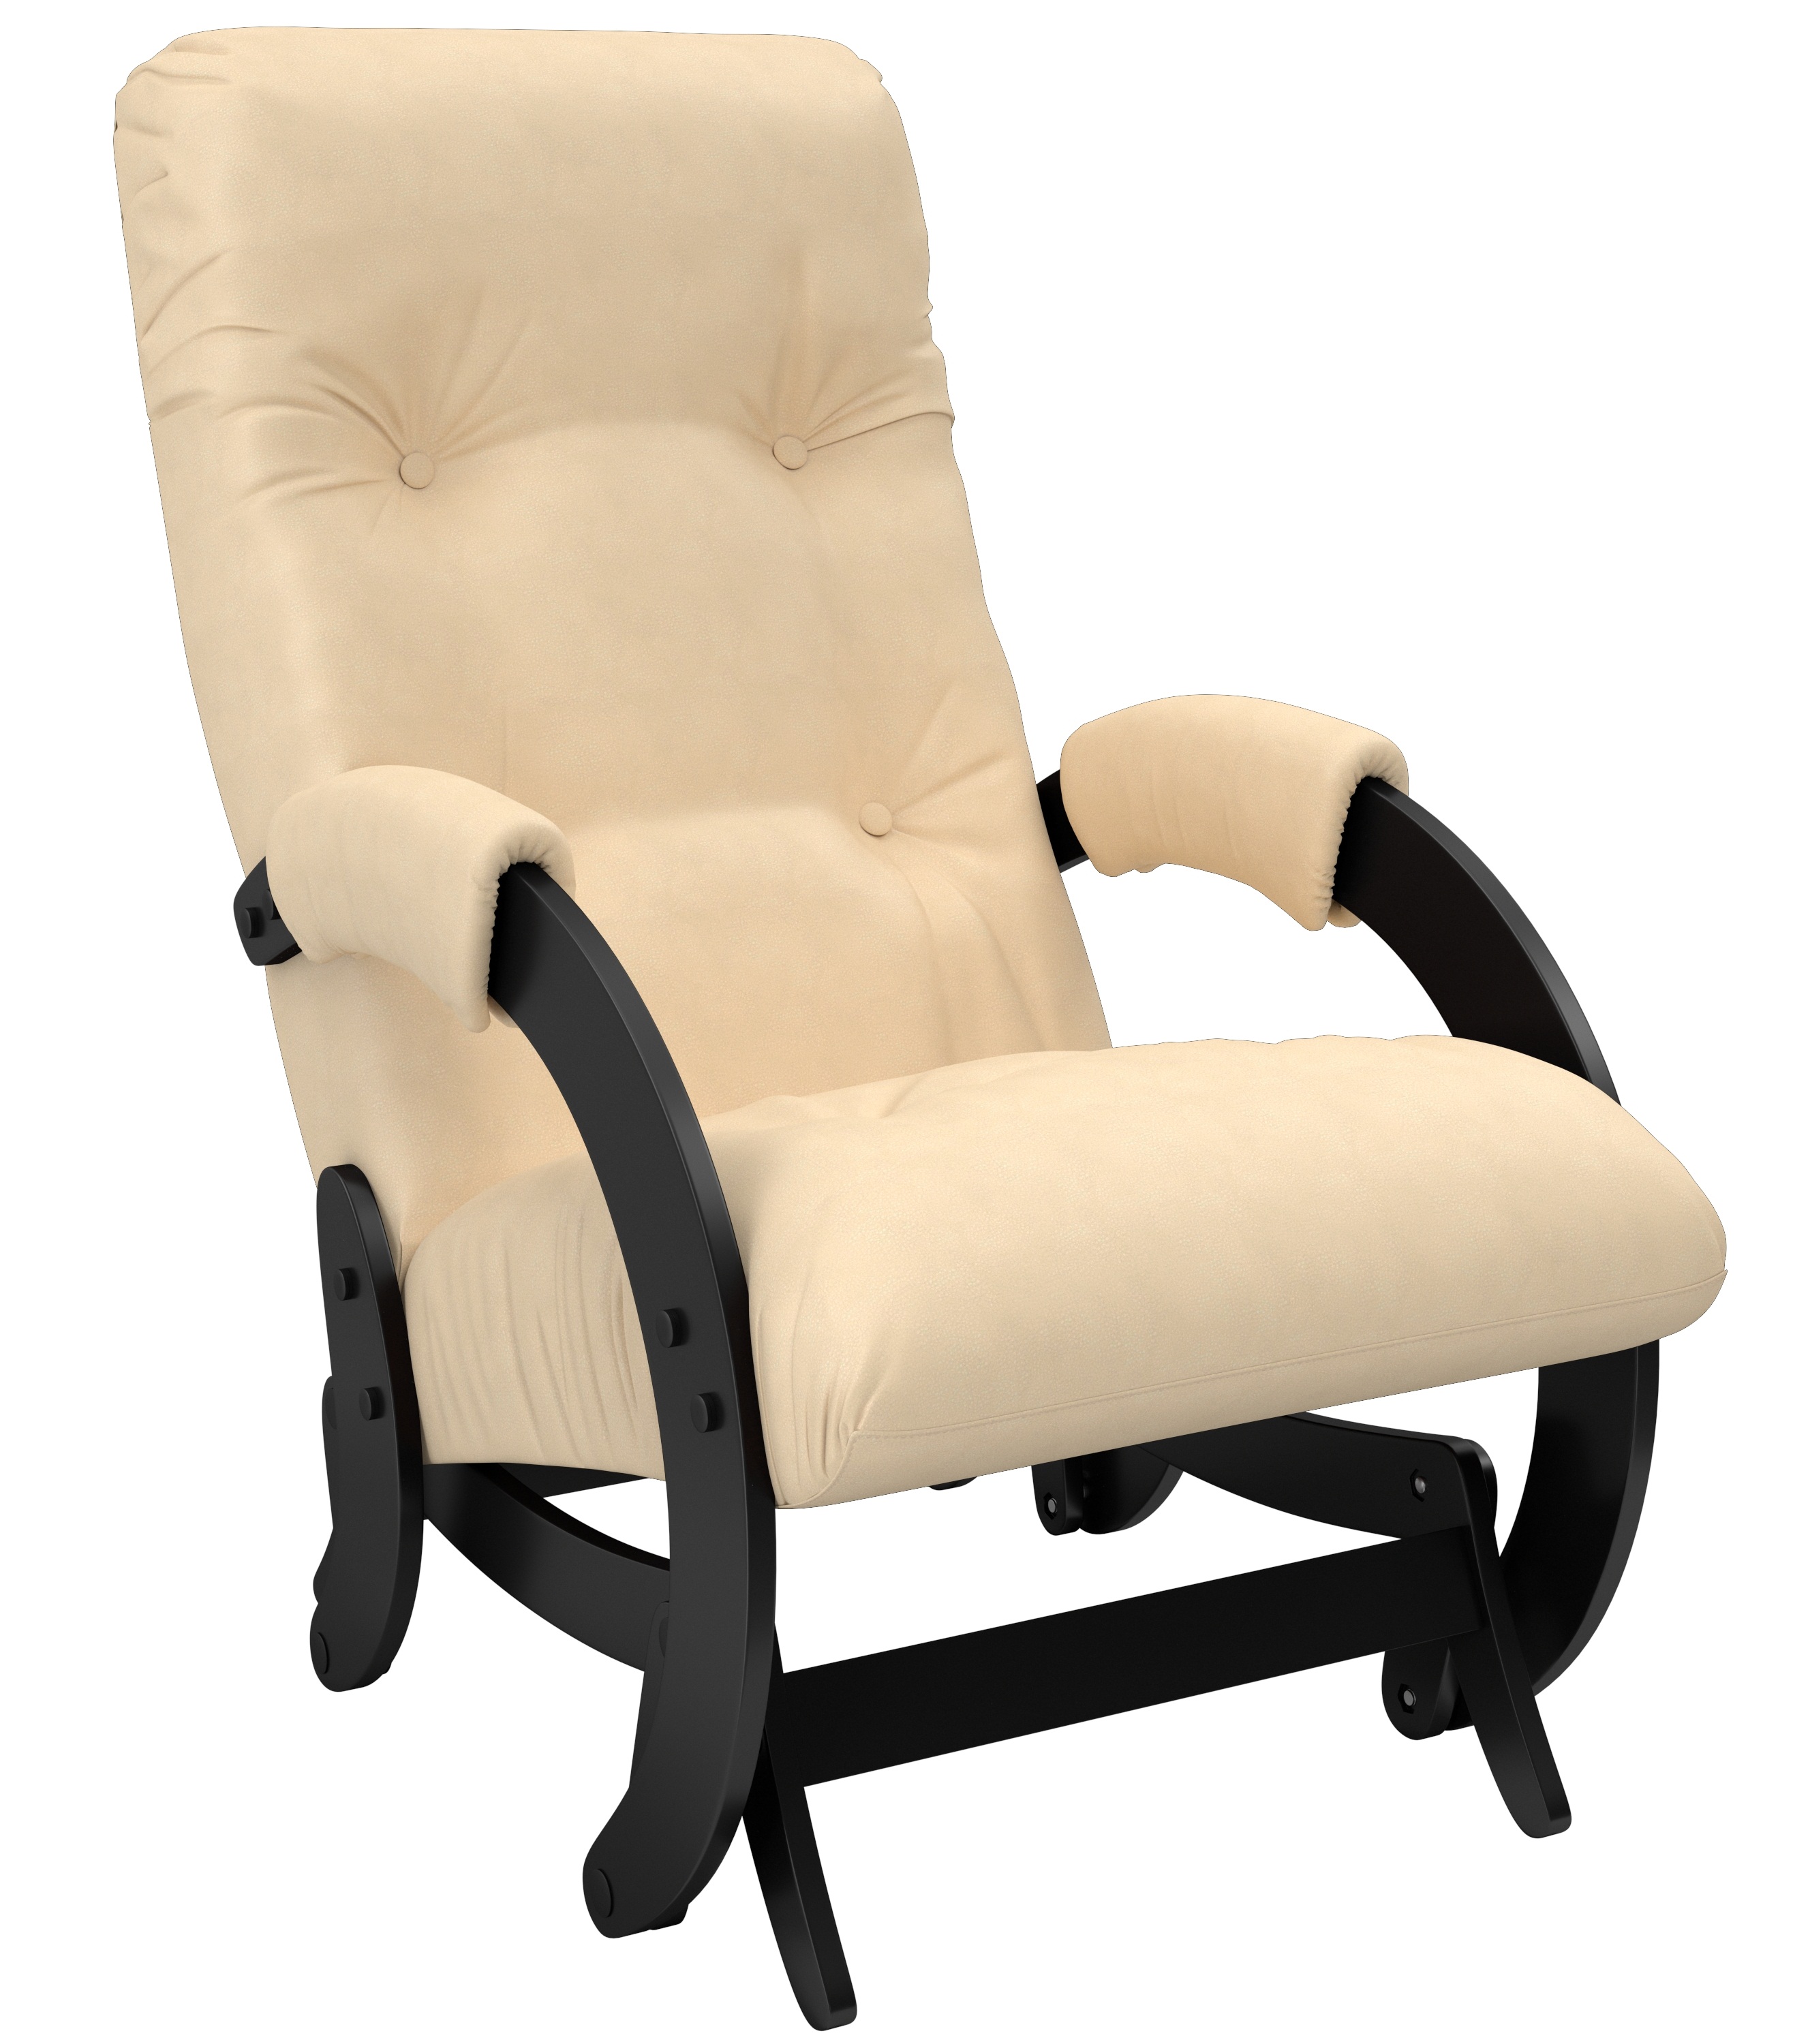 Кресло-качалка глайдер модель 68 с подлокотниками фото 1